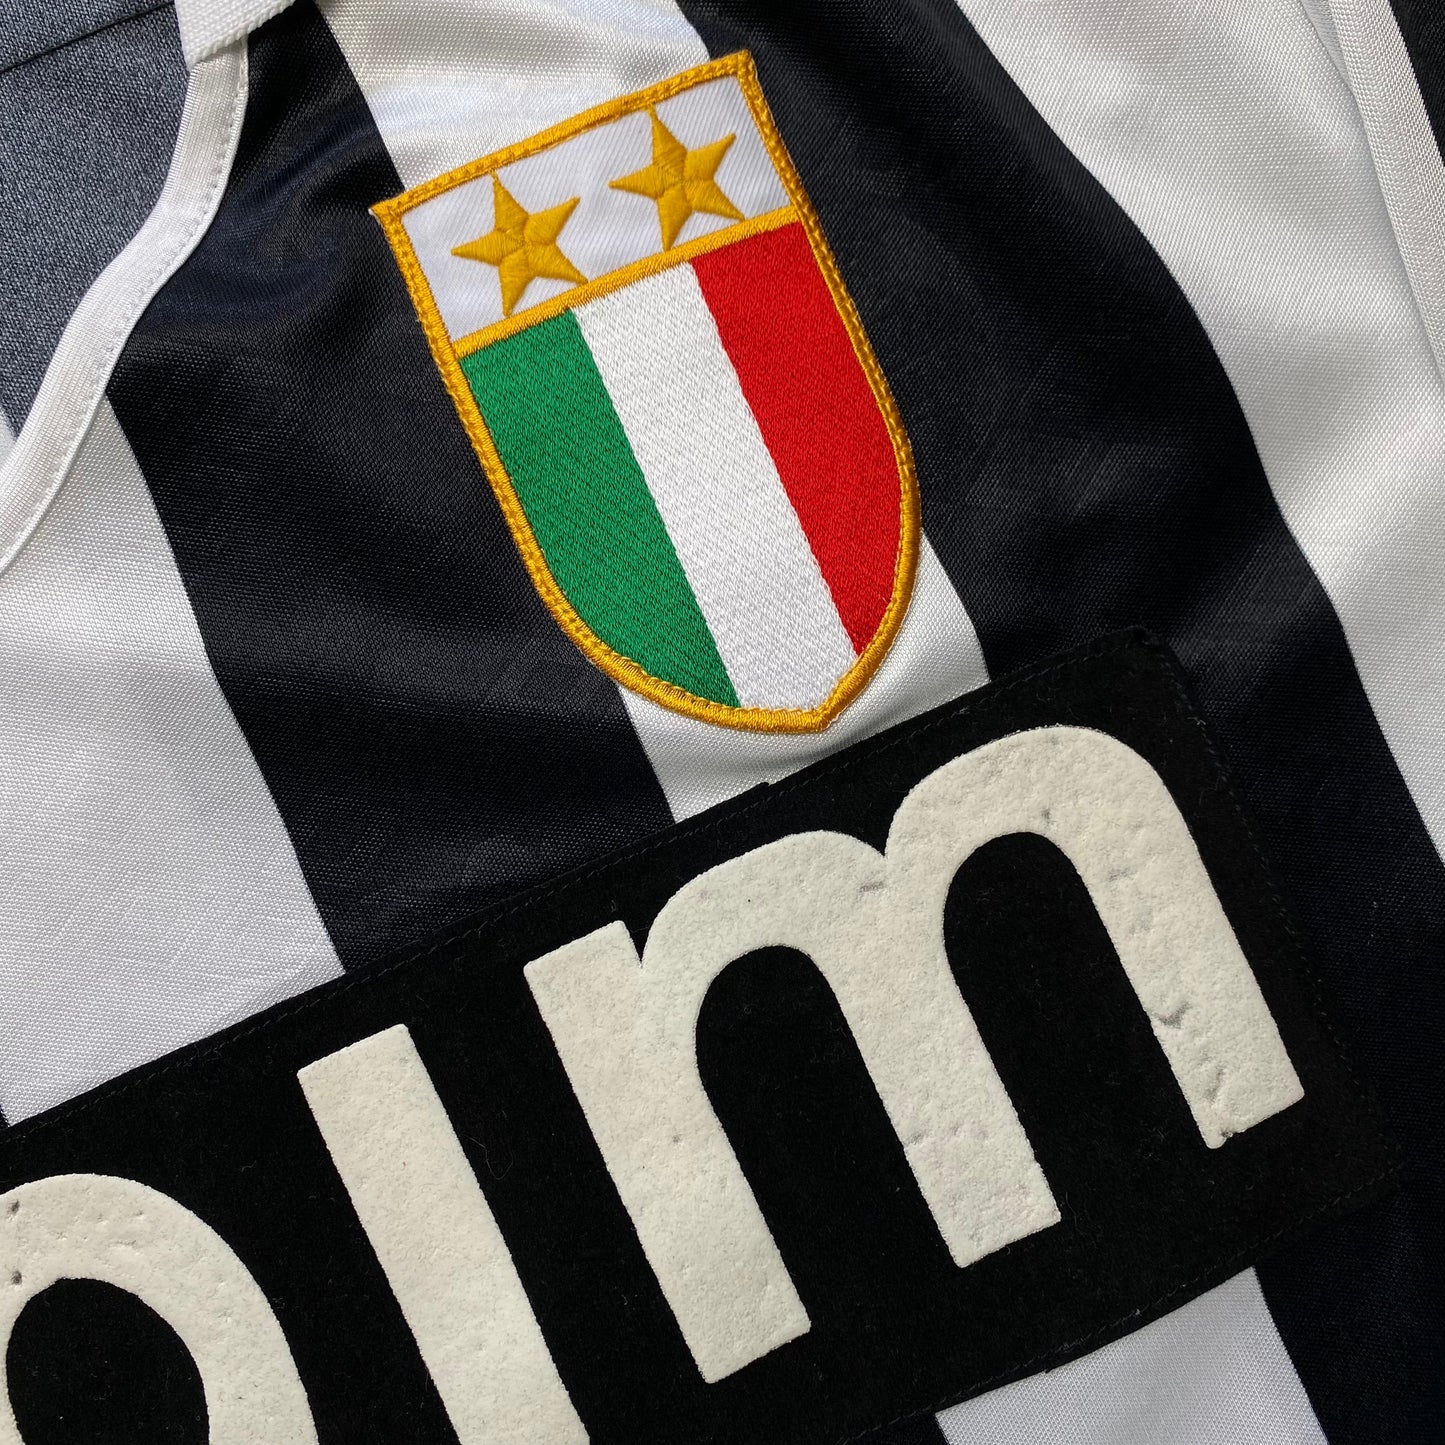 Juventus 1990-91 Home Shirt (L)